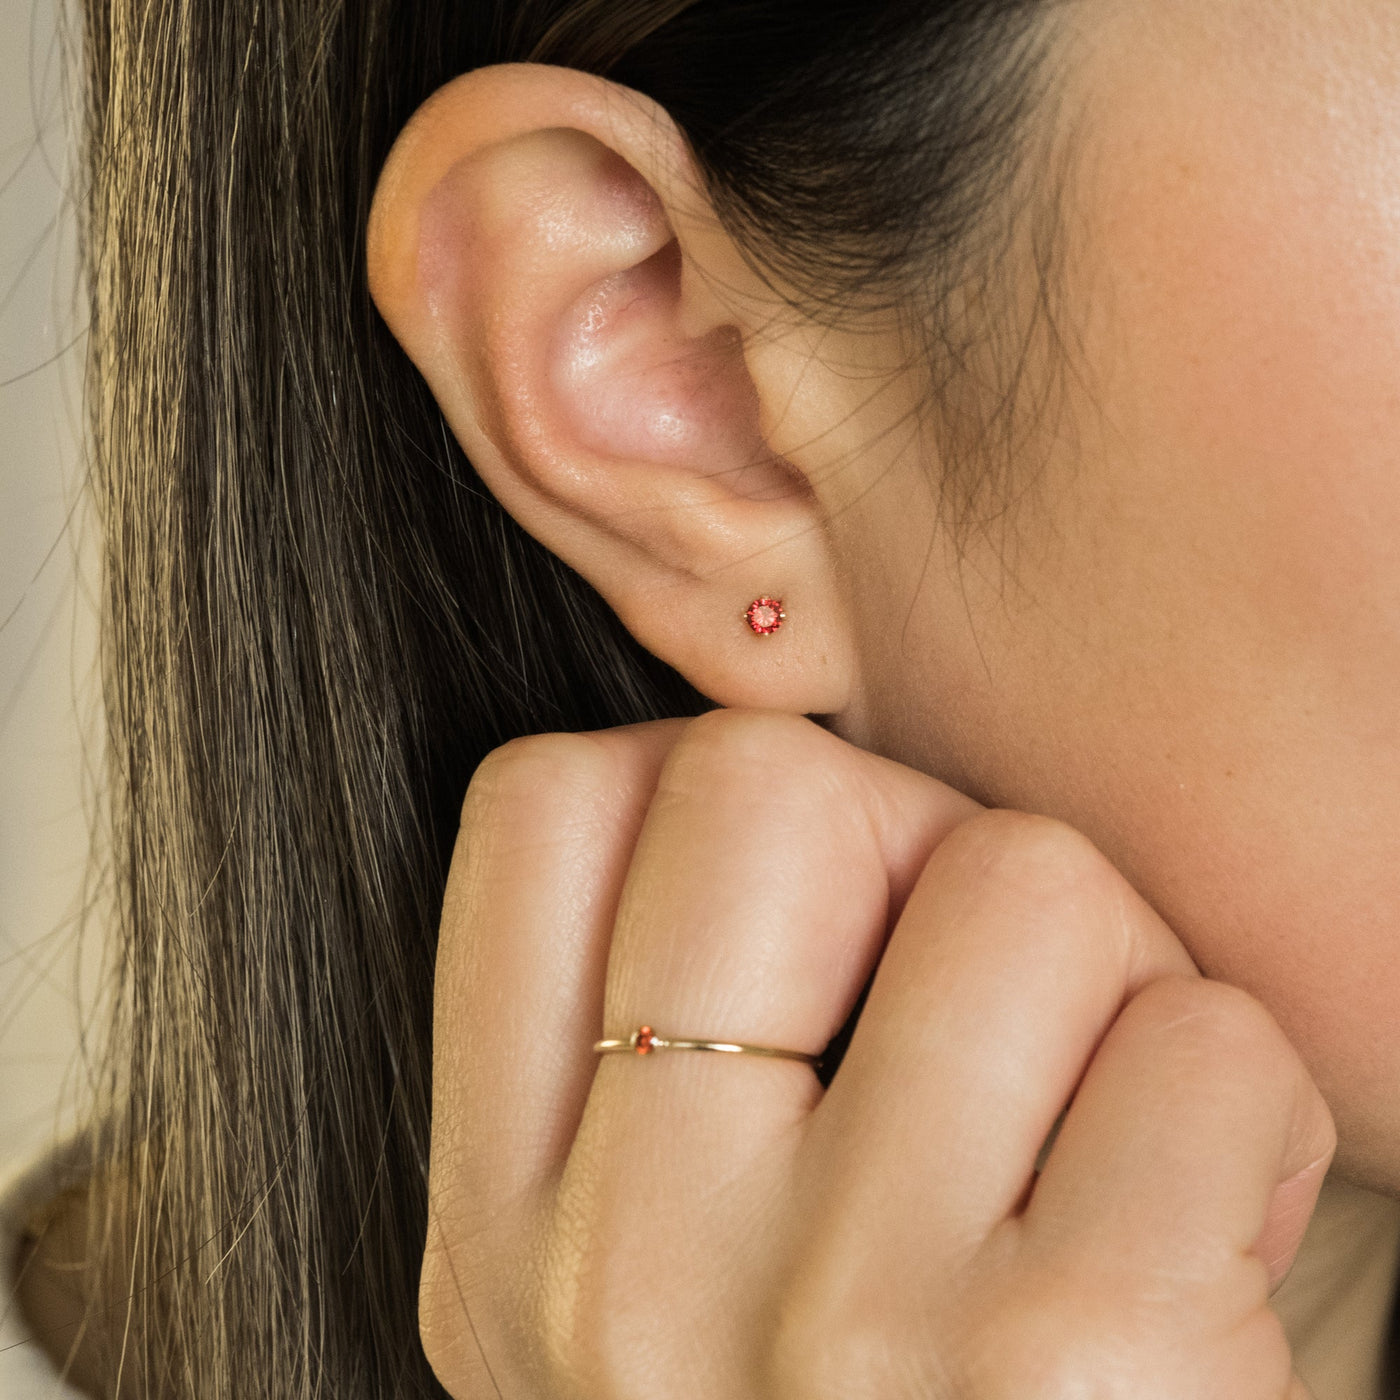 July Birthstone Stud Earrings (Ruby) | Simple & Dainty Jewelry